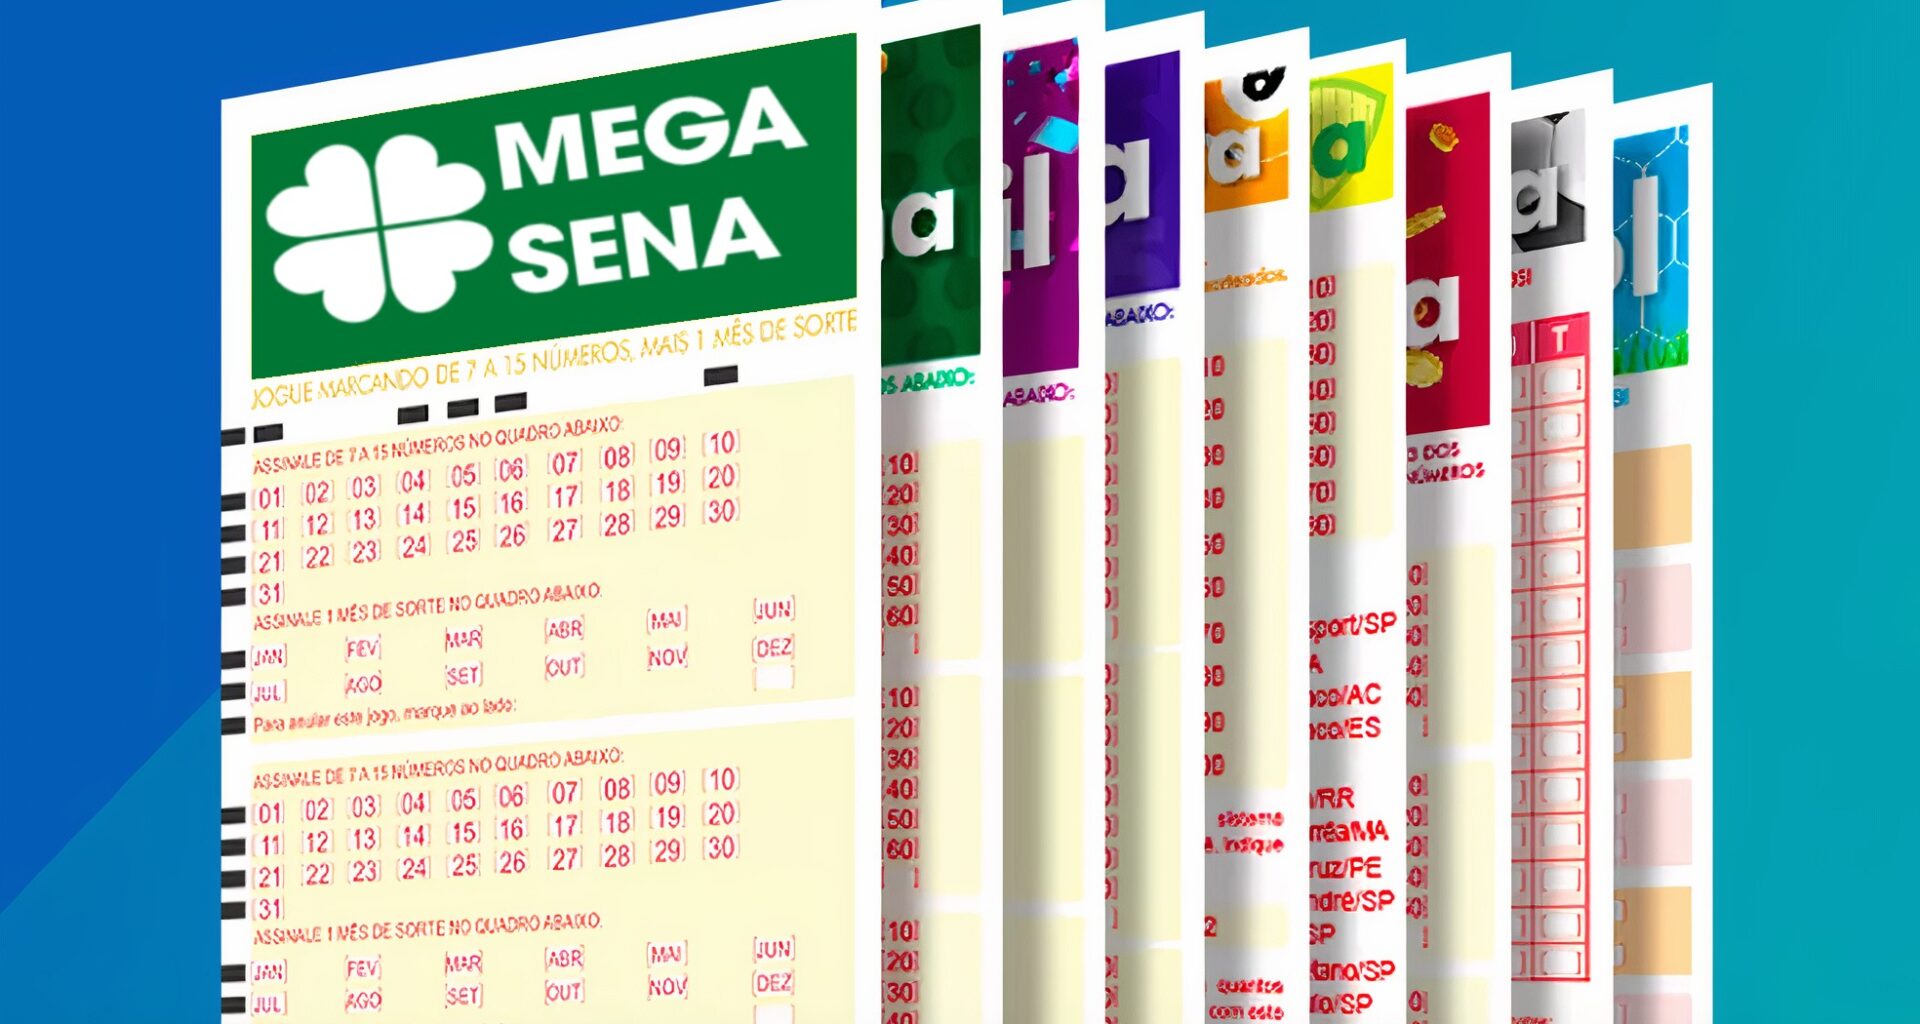 Mega-Sena: Jogar Online! ᐅJogos Simples e Bolão!